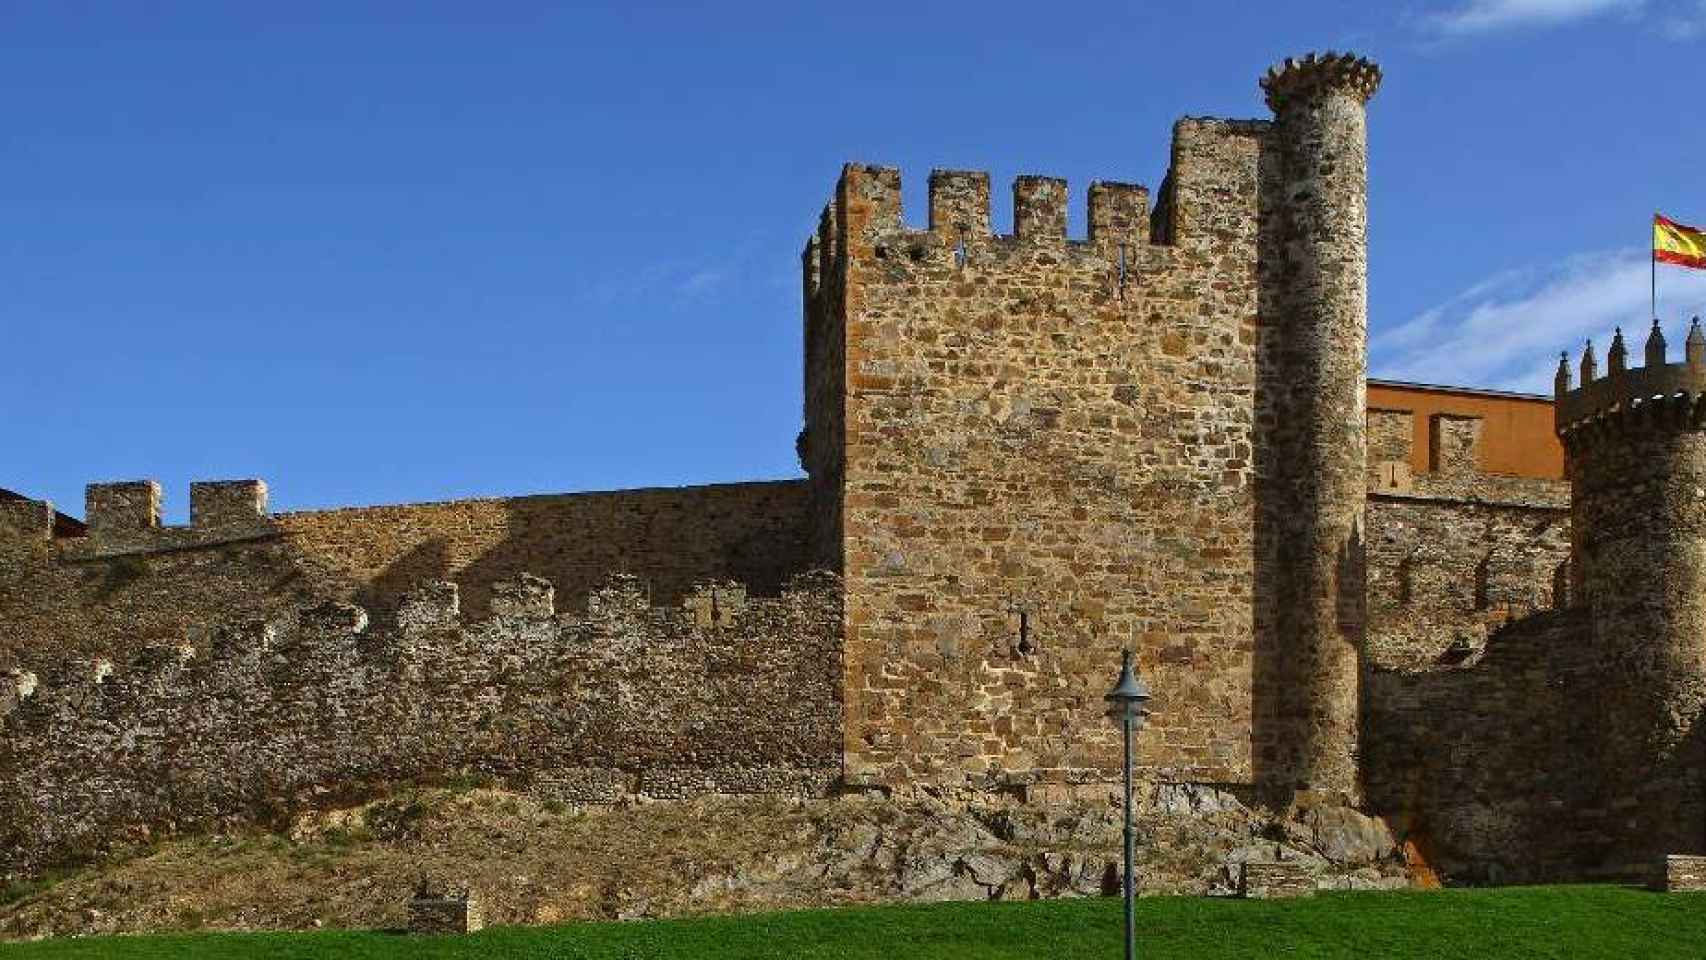 Castillo templario de Ponferrada